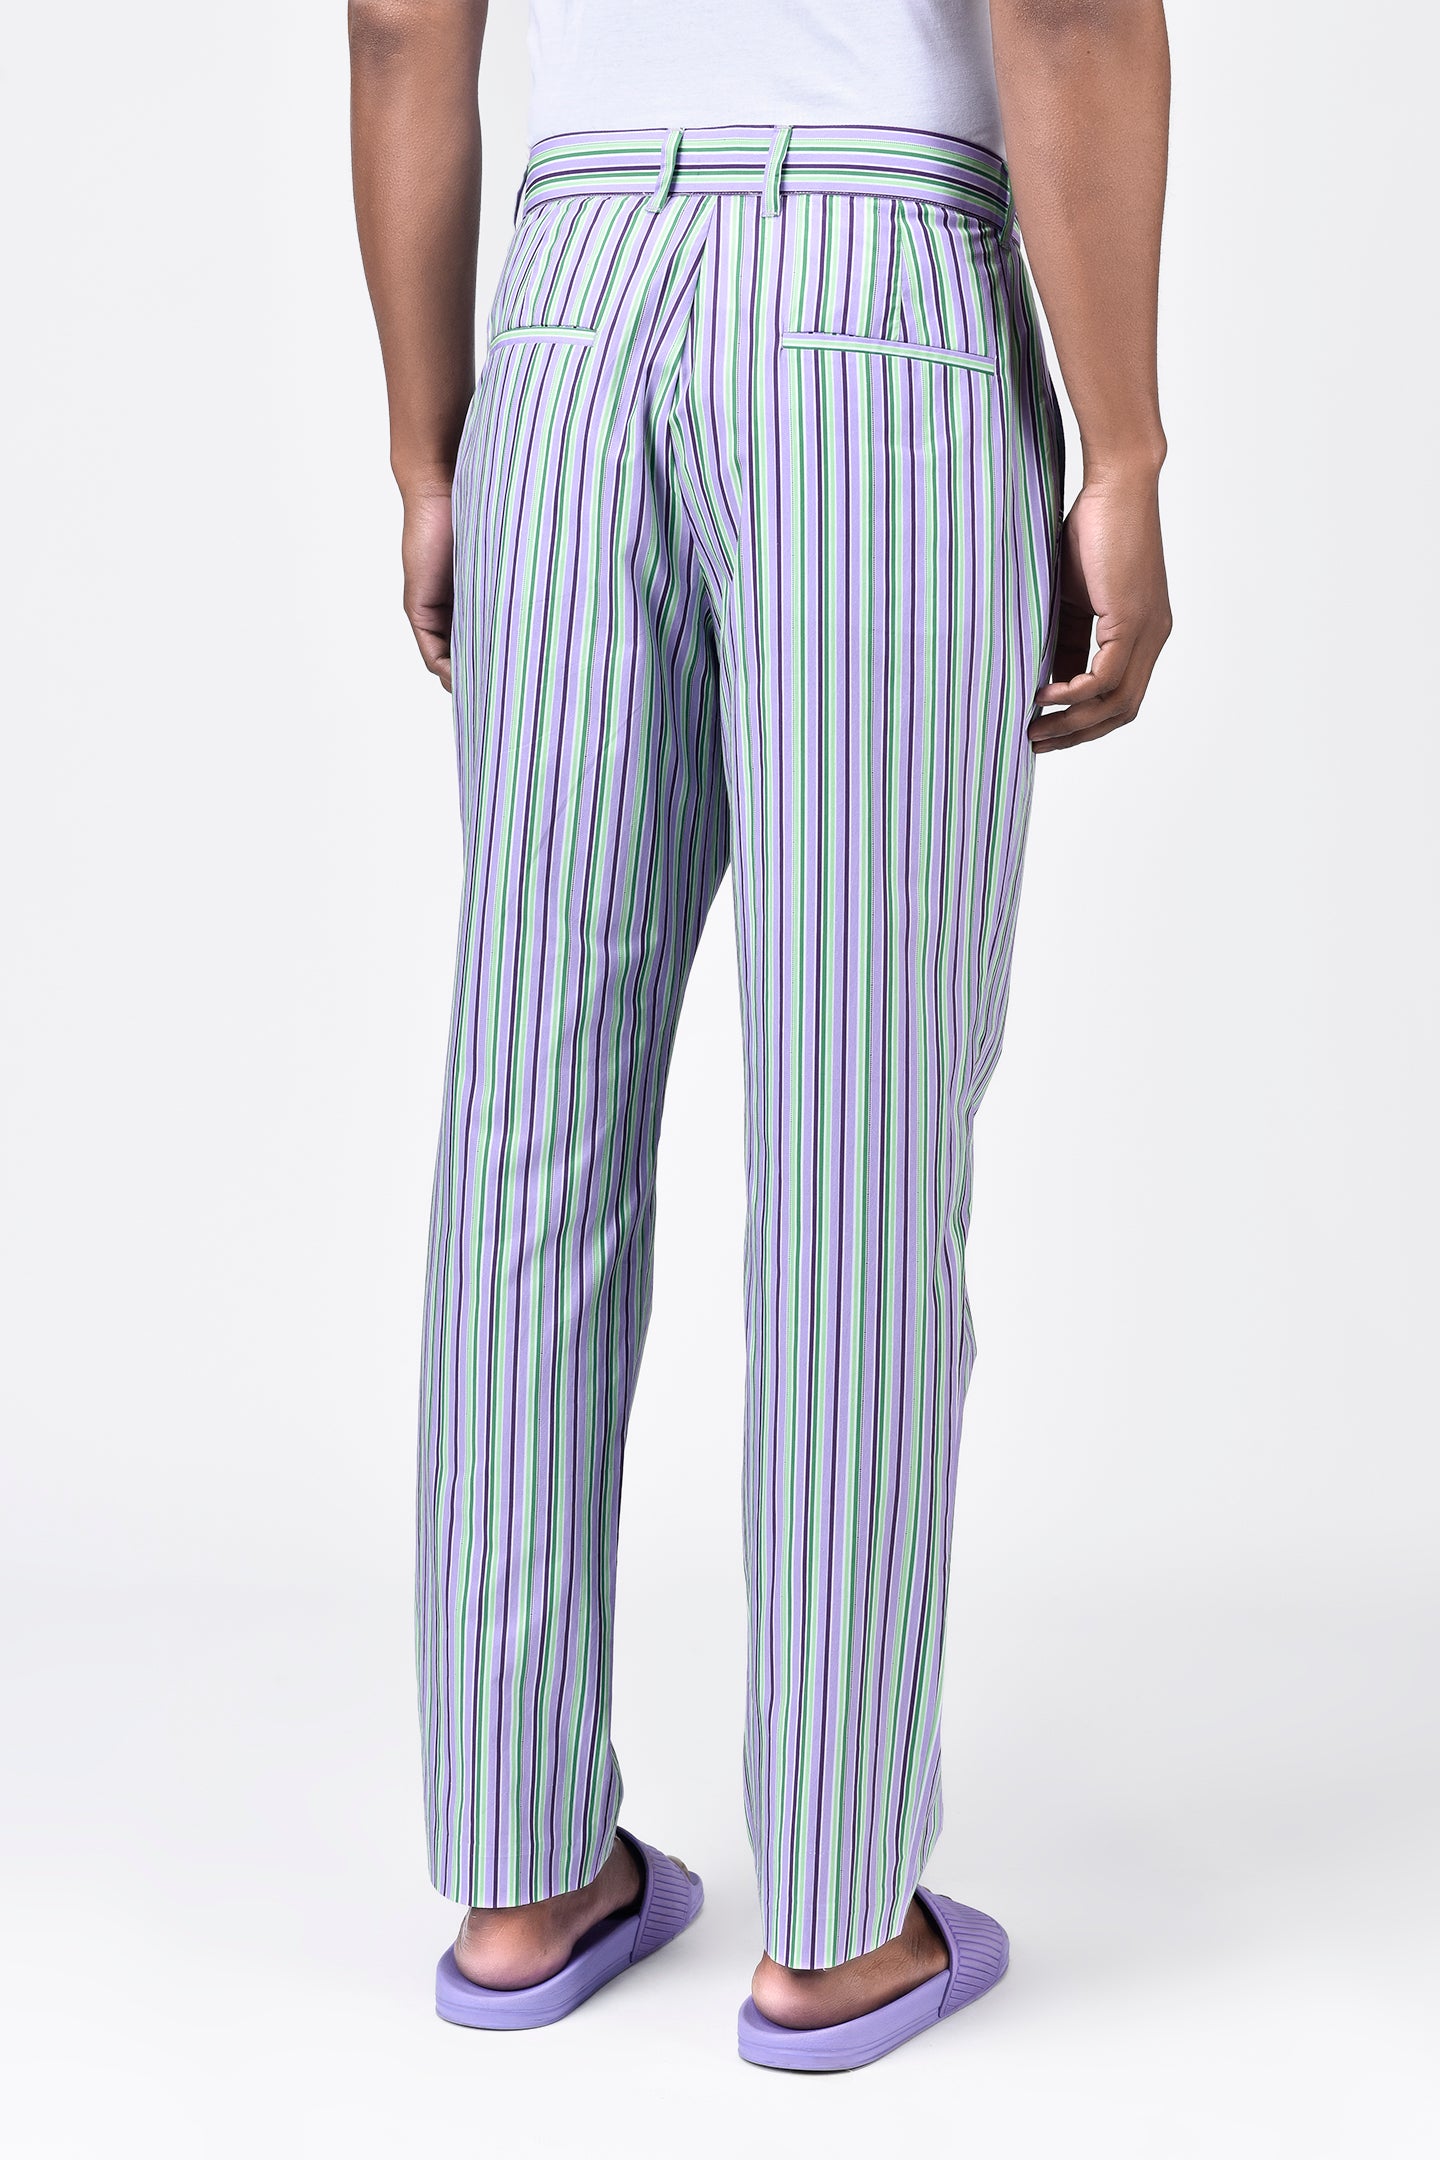 Multicolor Stripes Regular Fit Men's Trousers